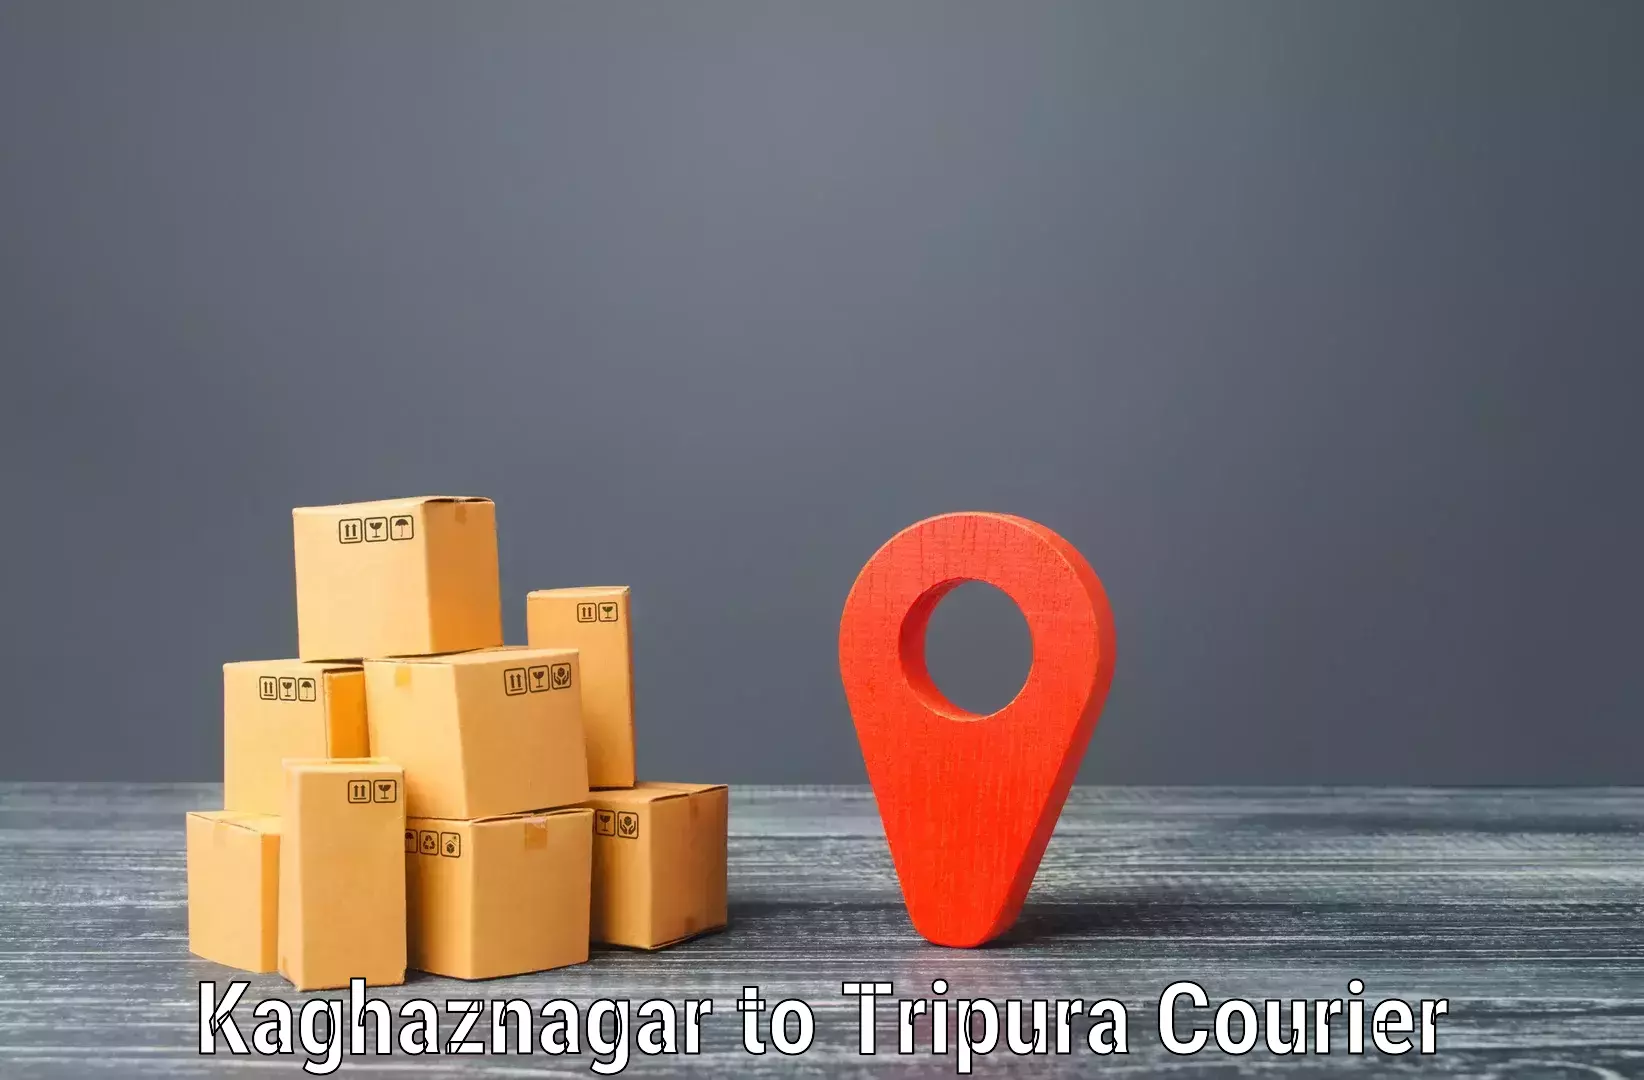 Customer-centric shipping Kaghaznagar to Santirbazar